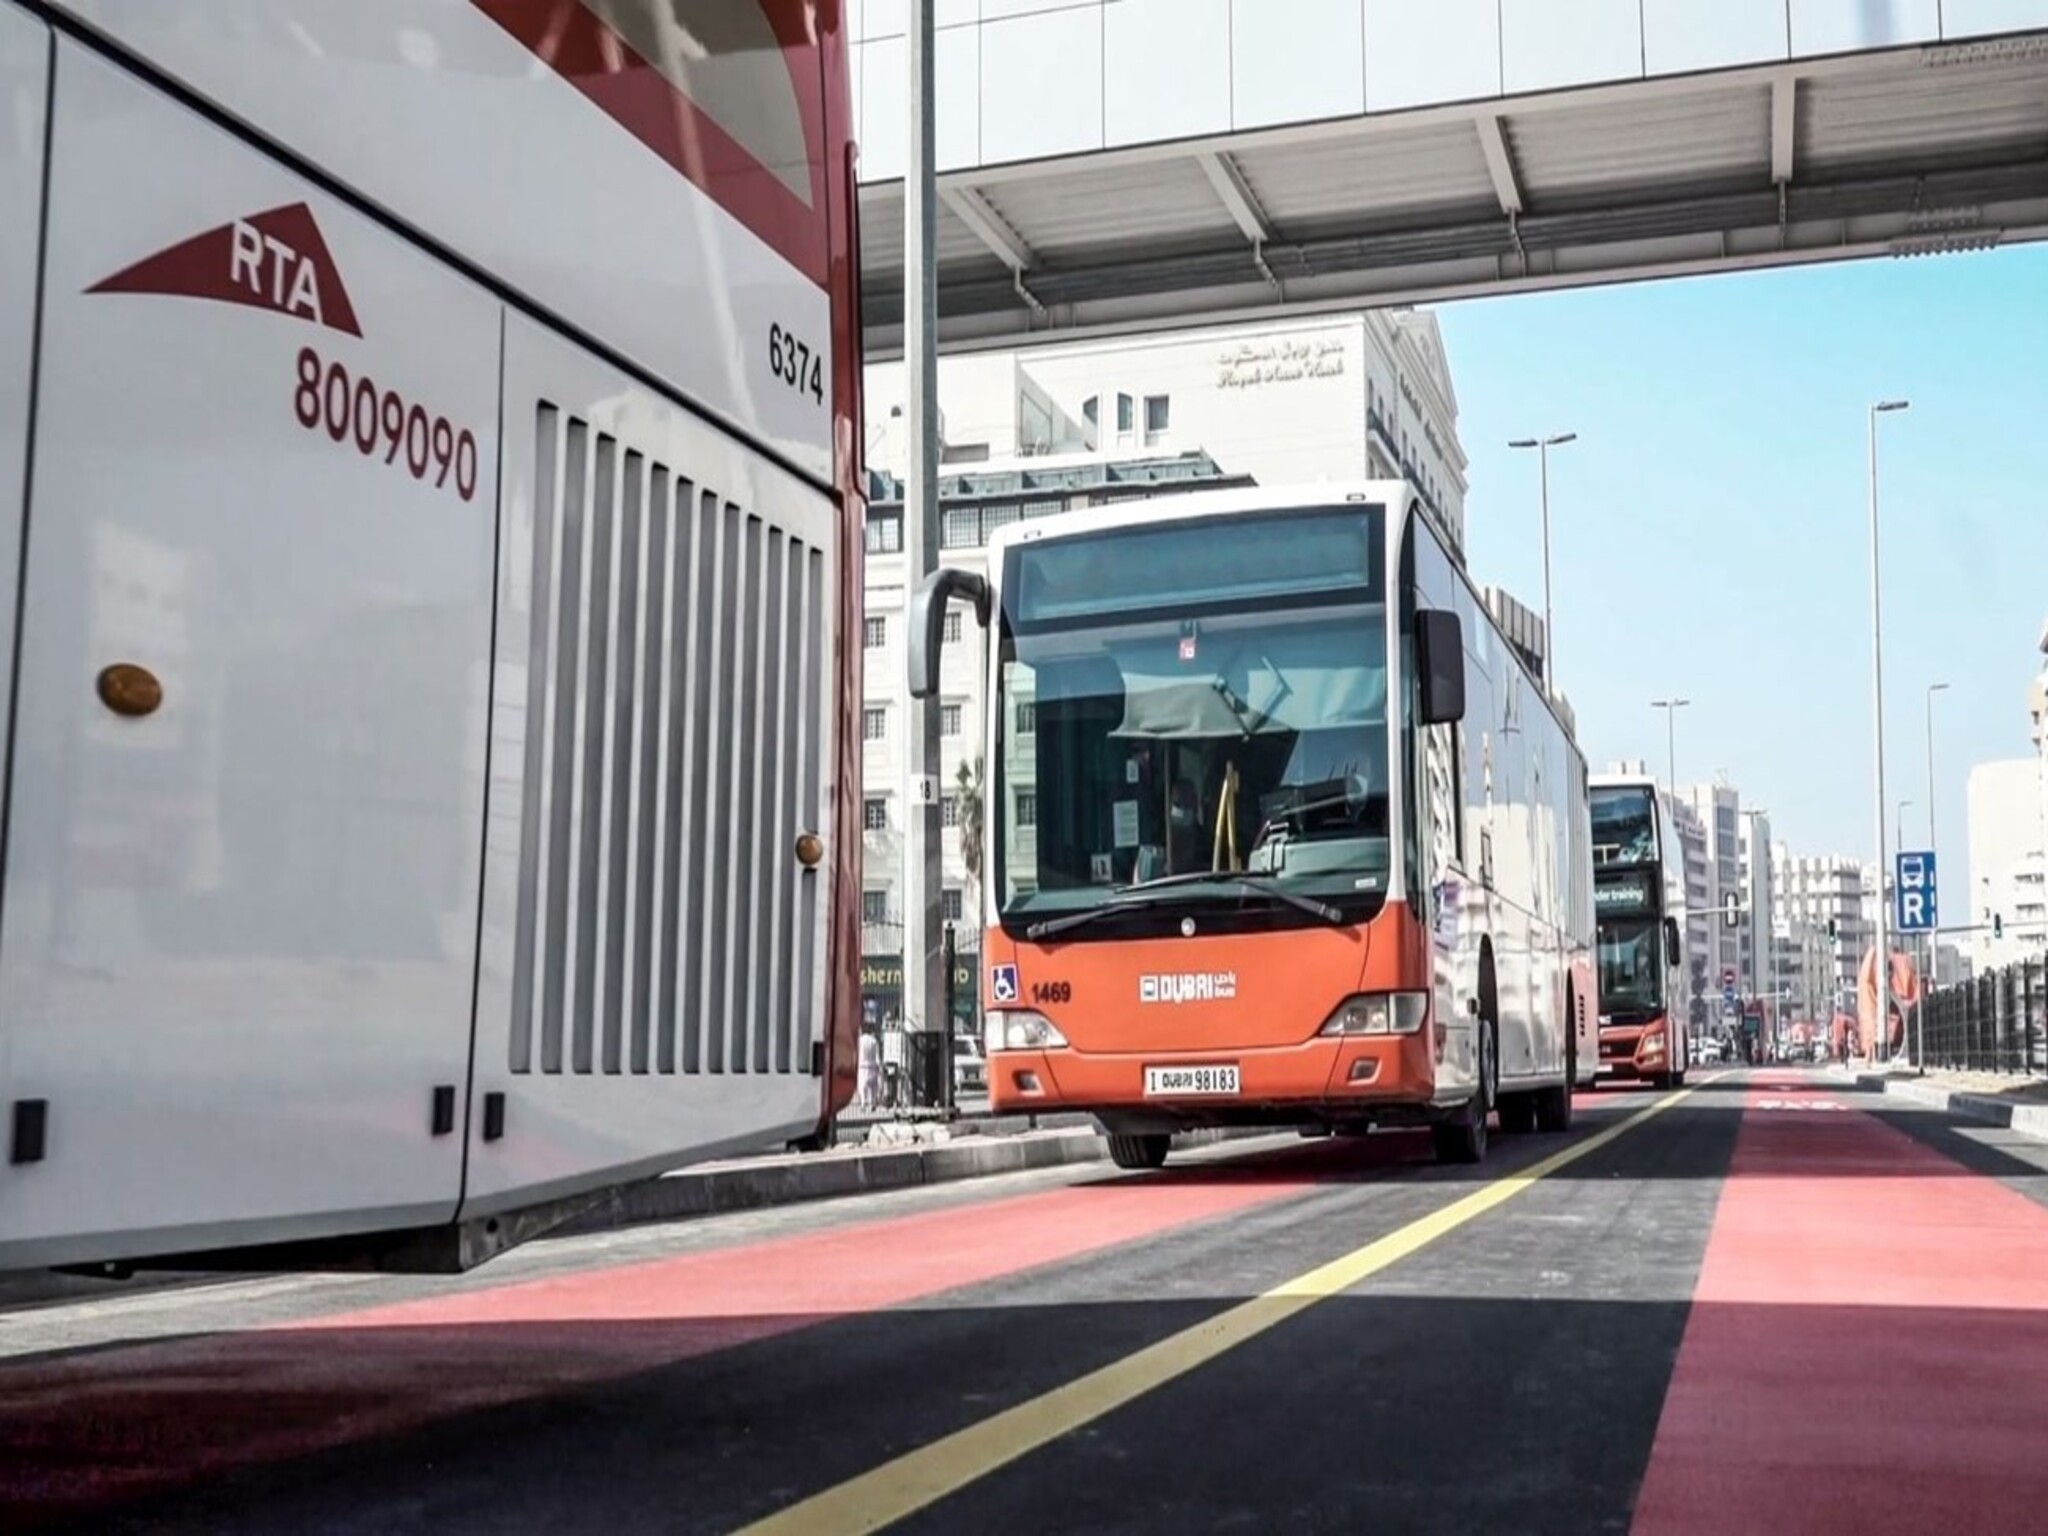 إعتماد خطة تنفيذ مسارات جديدة للحافلات ومركبات الأجرة في دبي